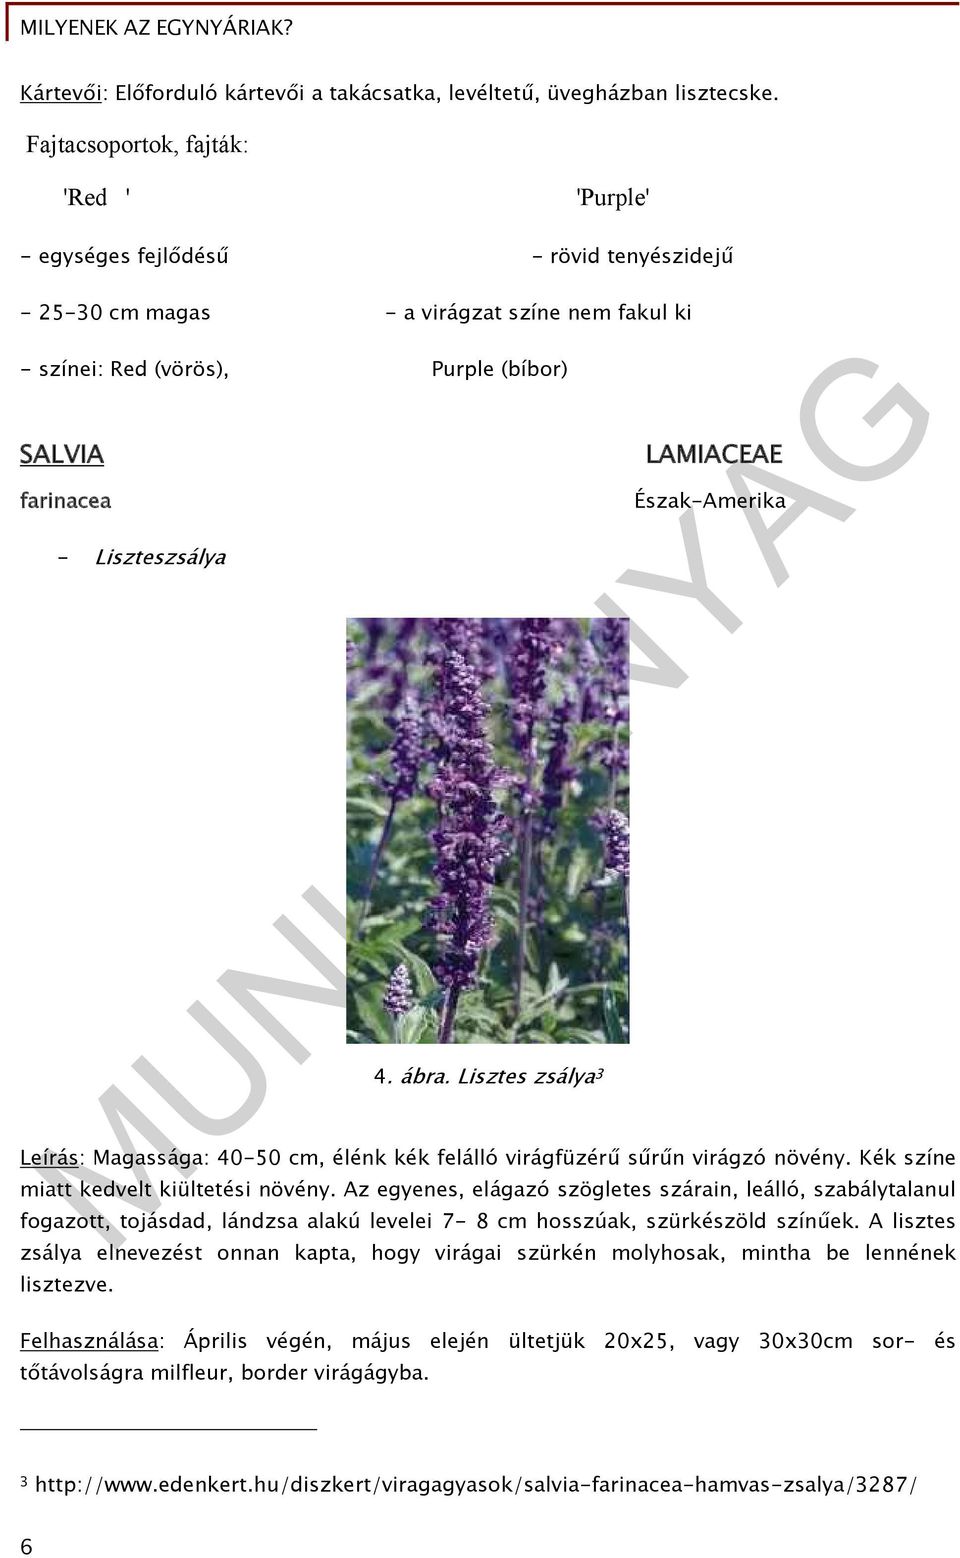 Liszteszsálya 4. ábra. Lisztes zsálya 3 LAMIACEAE Észak-Amerika Leírás: Magassága: 40-50 cm, élénk kék felálló virágfüzérű sűrűn virágzó növény. Kék színe miatt kedvelt kiültetési növény.